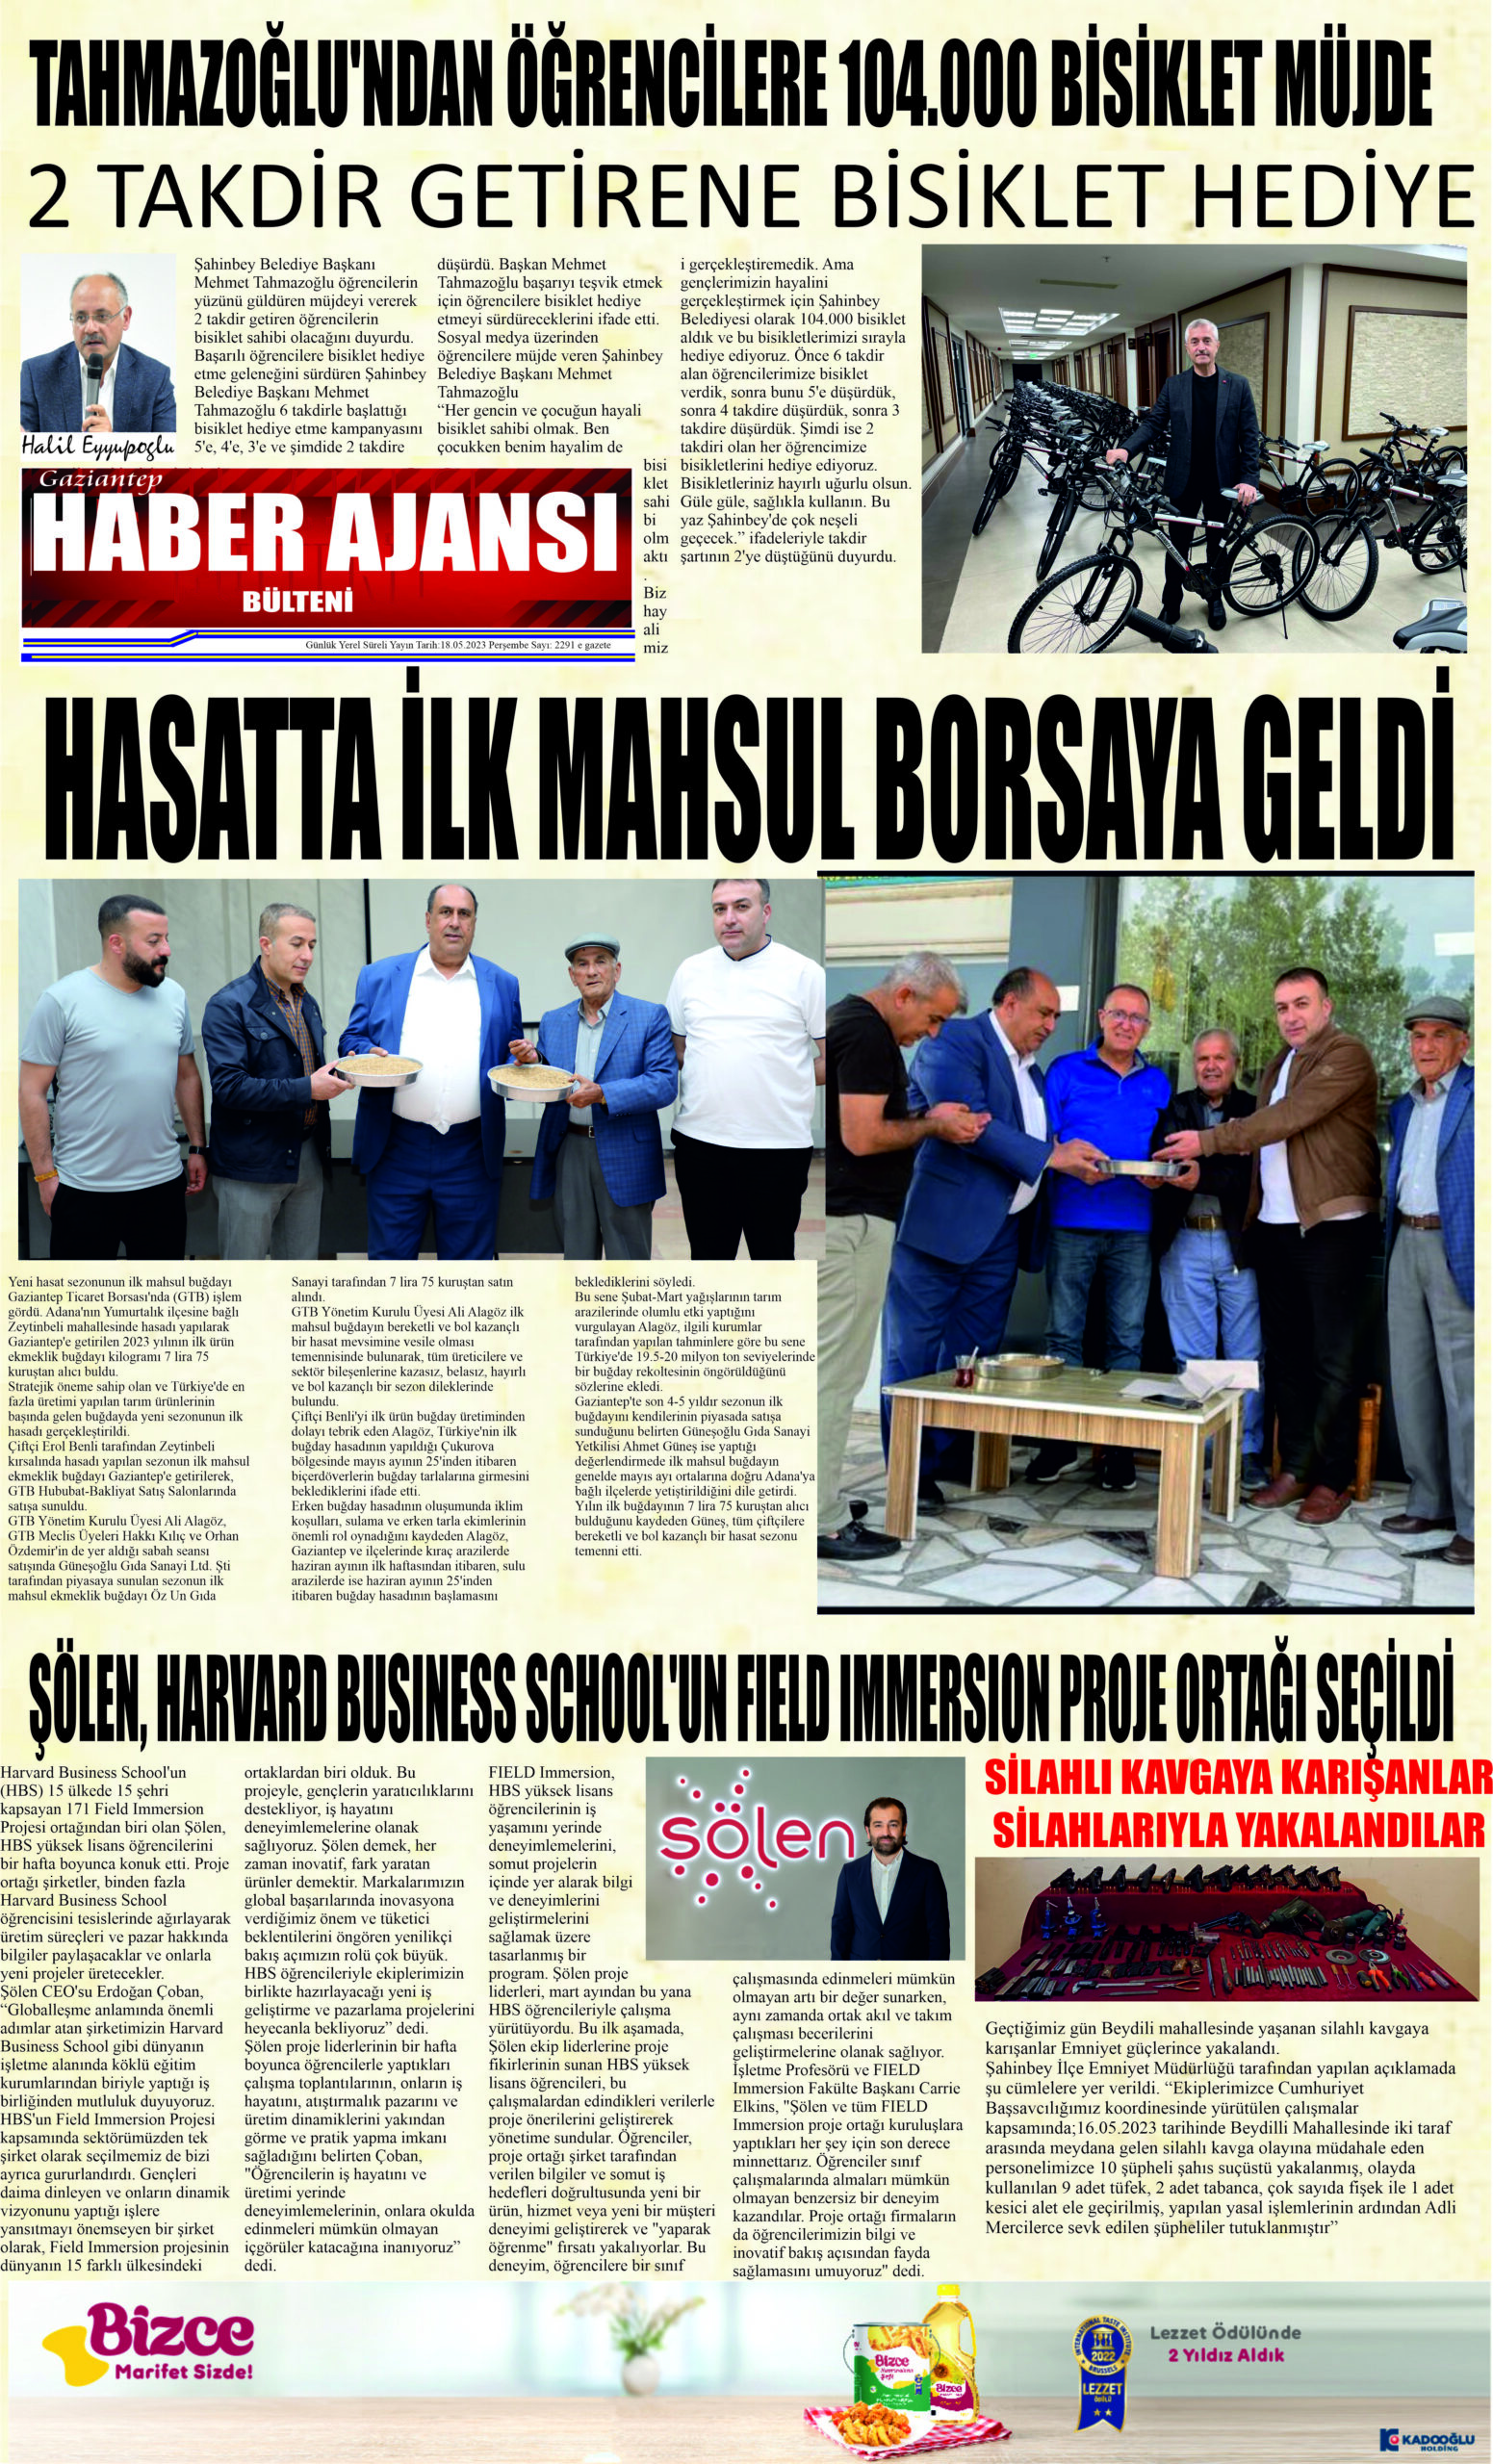 Gaziantep Haber Ajansı Bülteni Perşembe 18.05.2023 e gazete